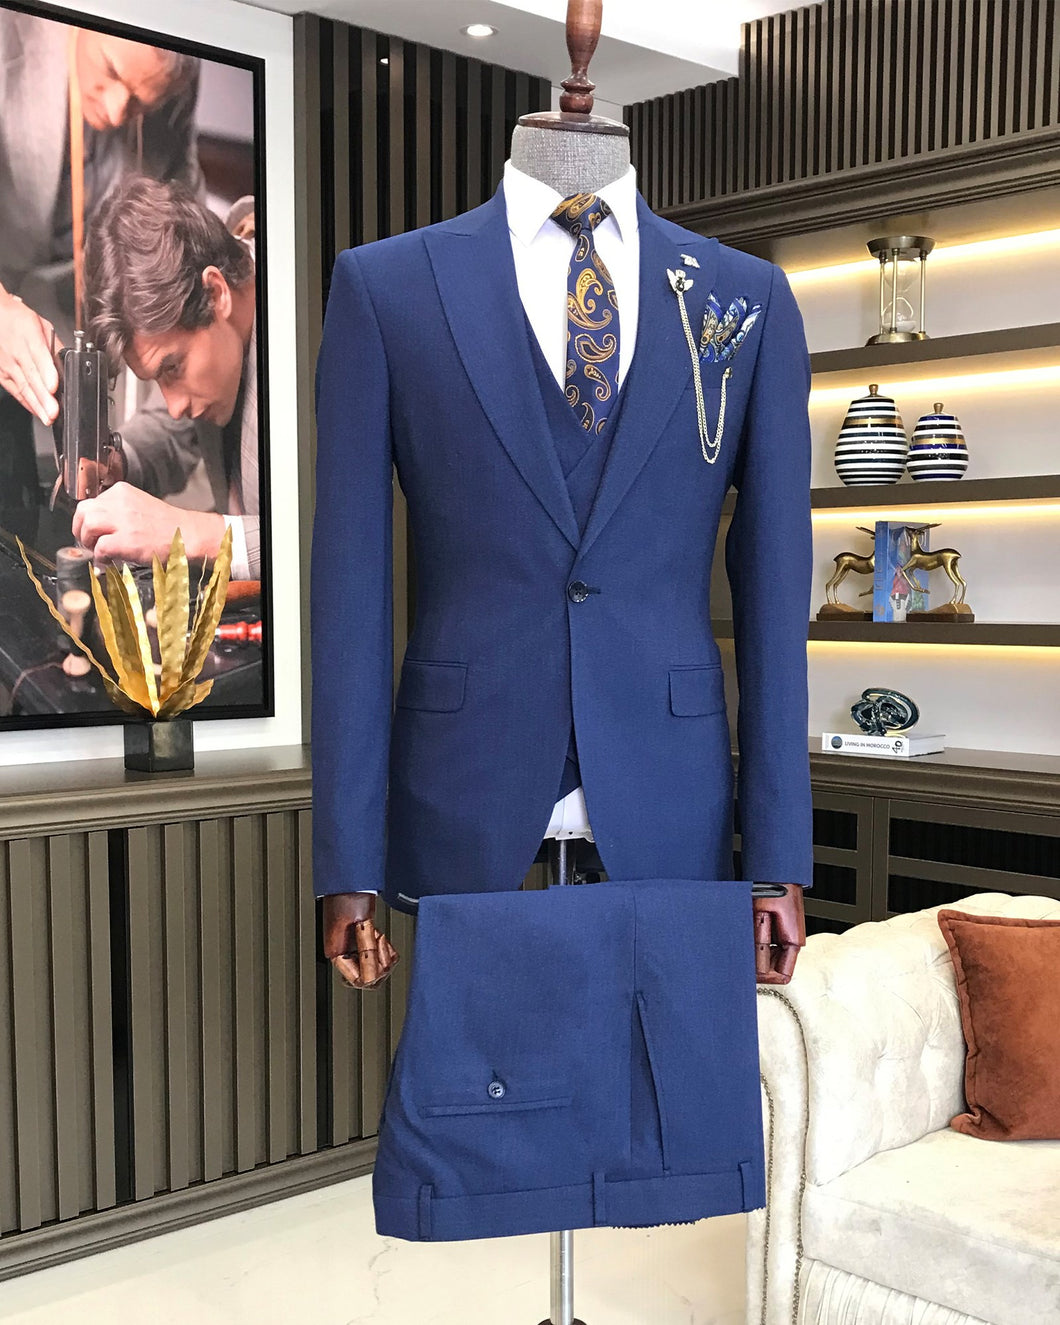 Blue Solid Slim Fit Suit